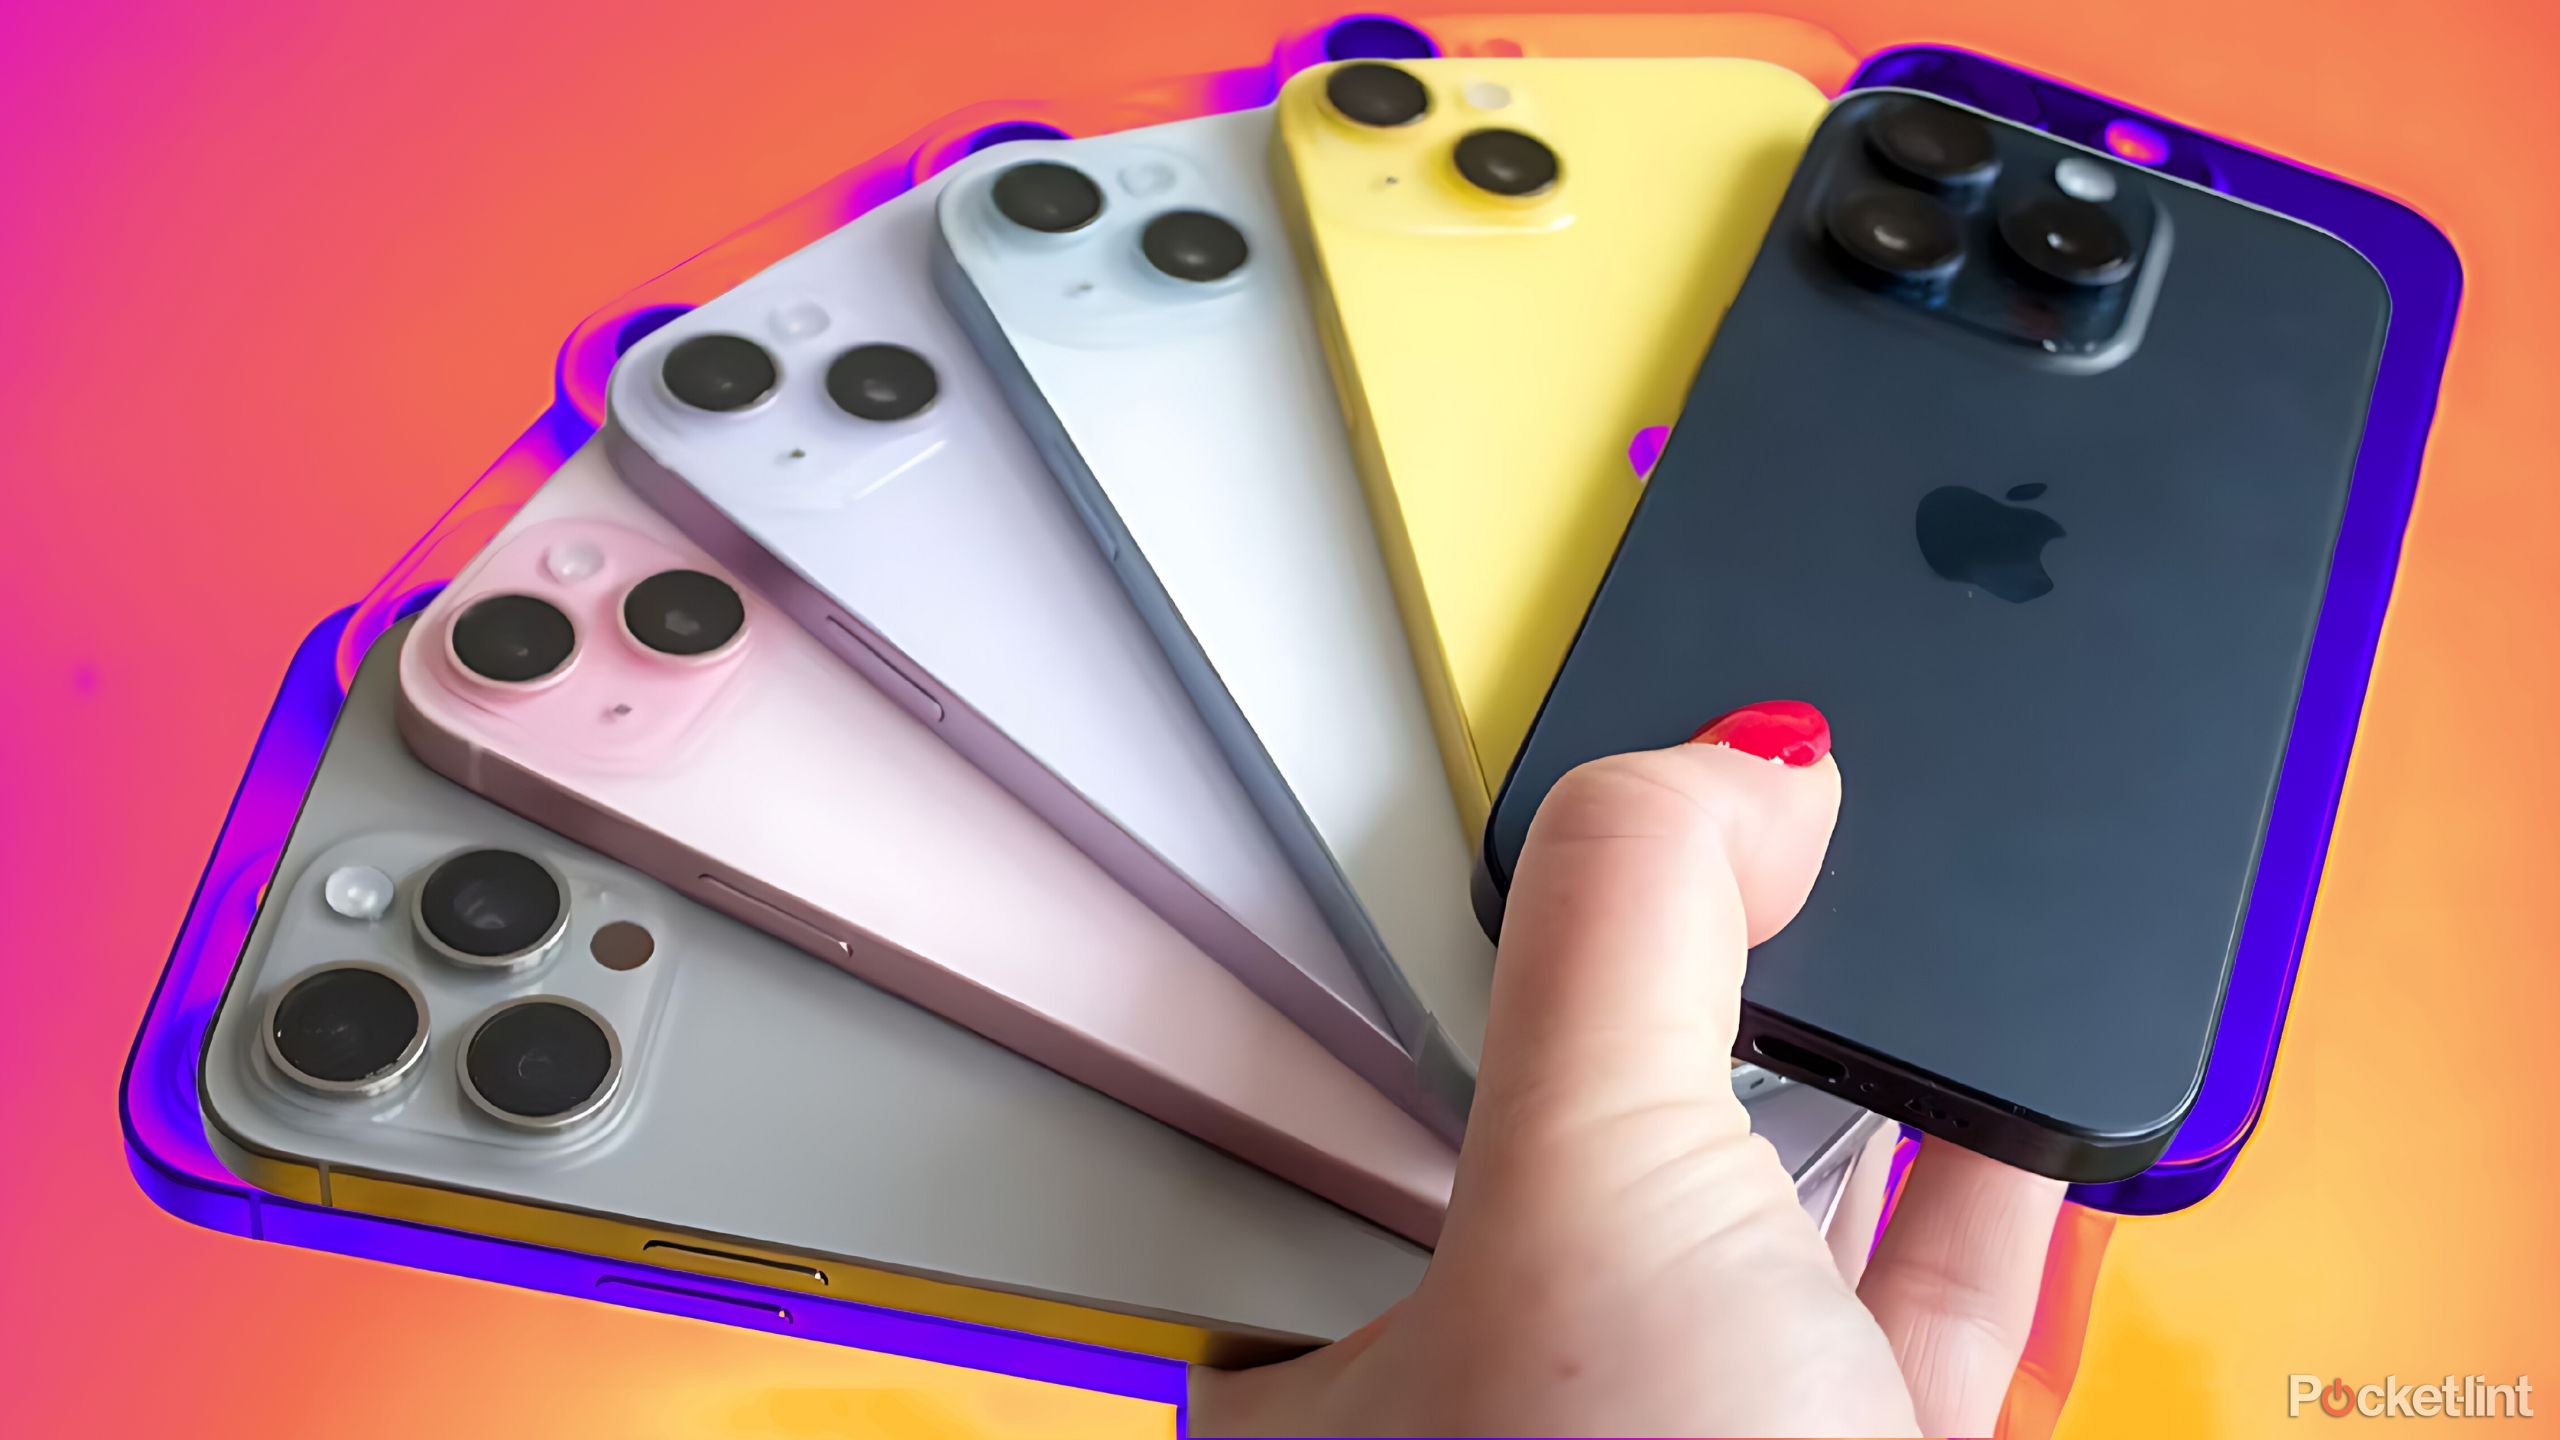 iphones in hand display colors